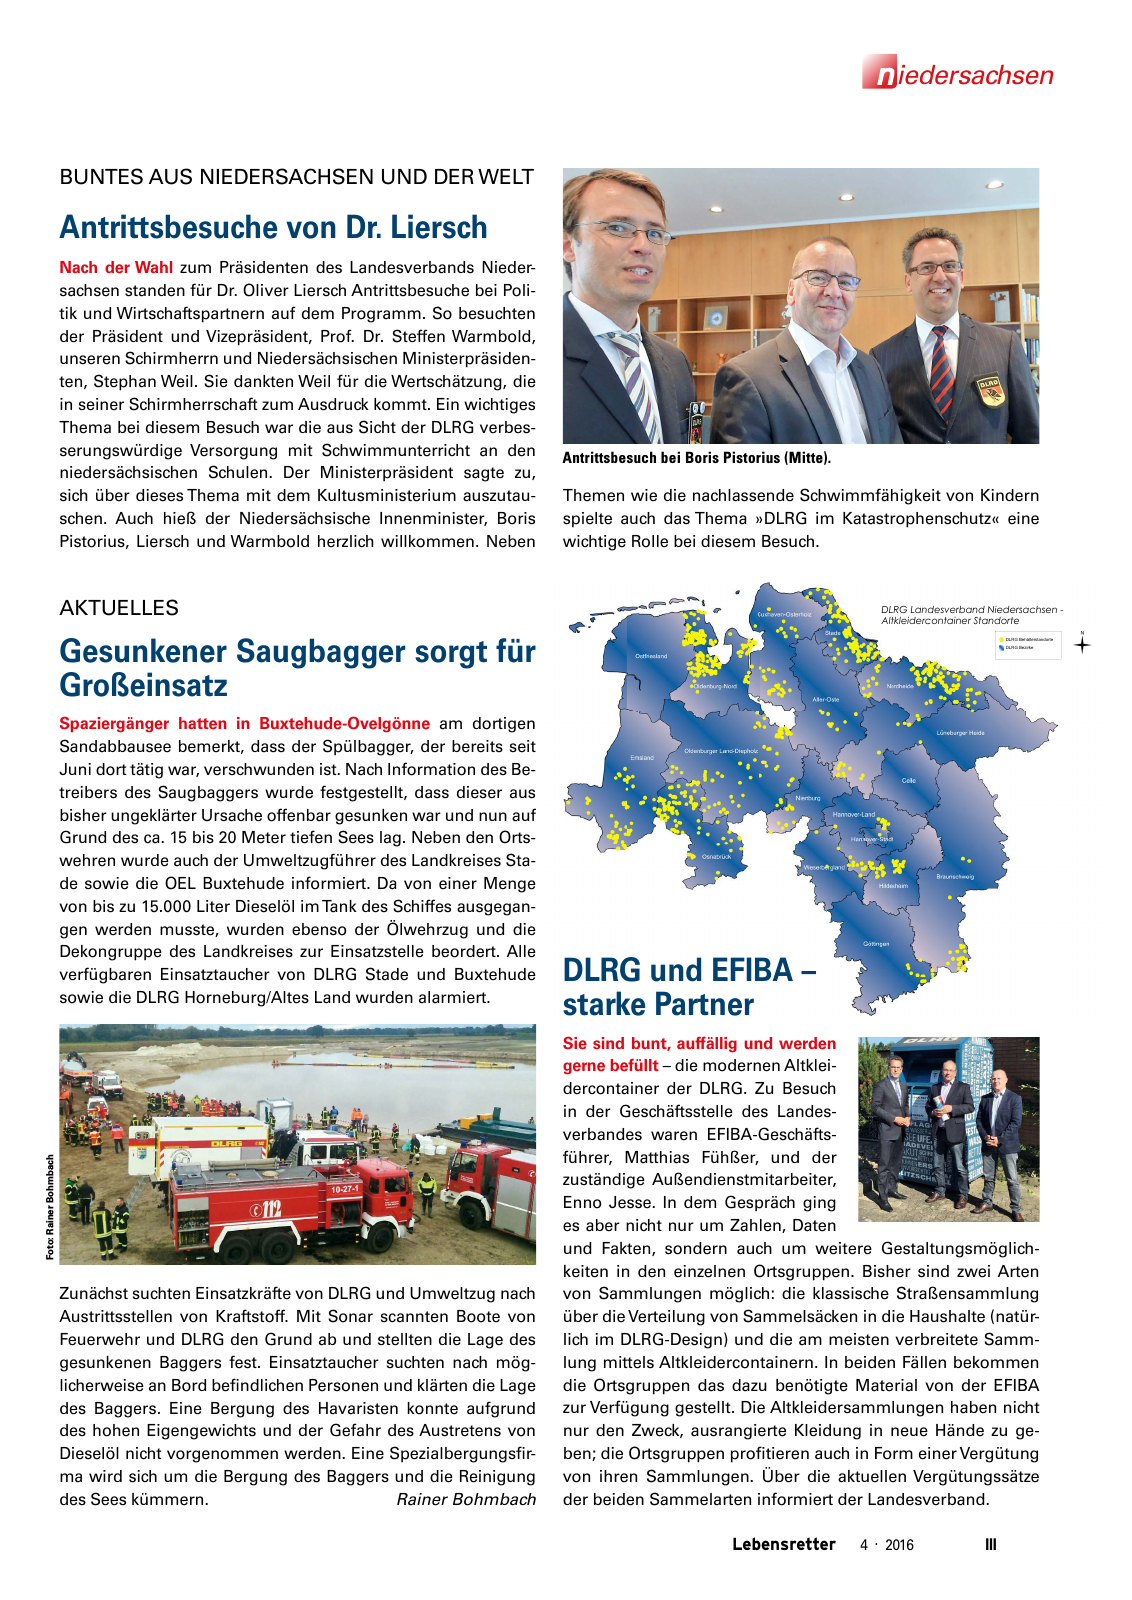 Vorschau Lebensretter 4/2016 - Regionalausgabe Niedersachsen Seite 5